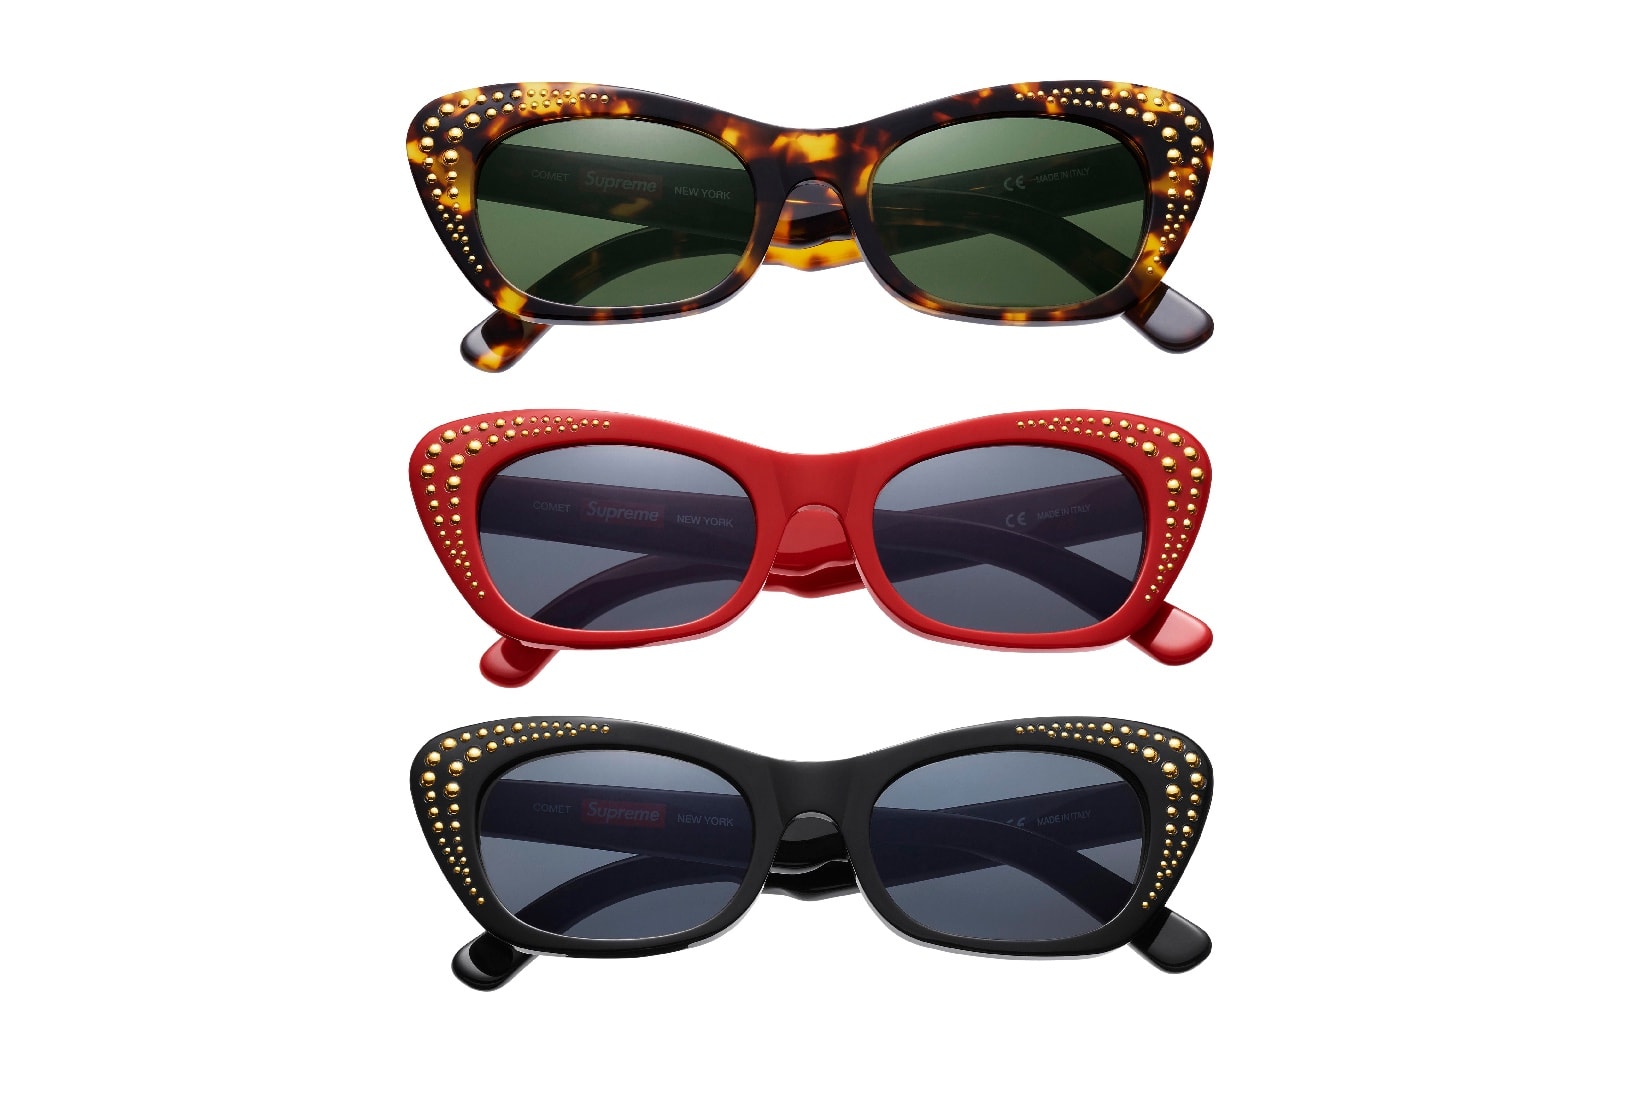 슈프림 2017 봄 선글라스 컬렉션 Supreme 2017 Spring Sunglasses Collection